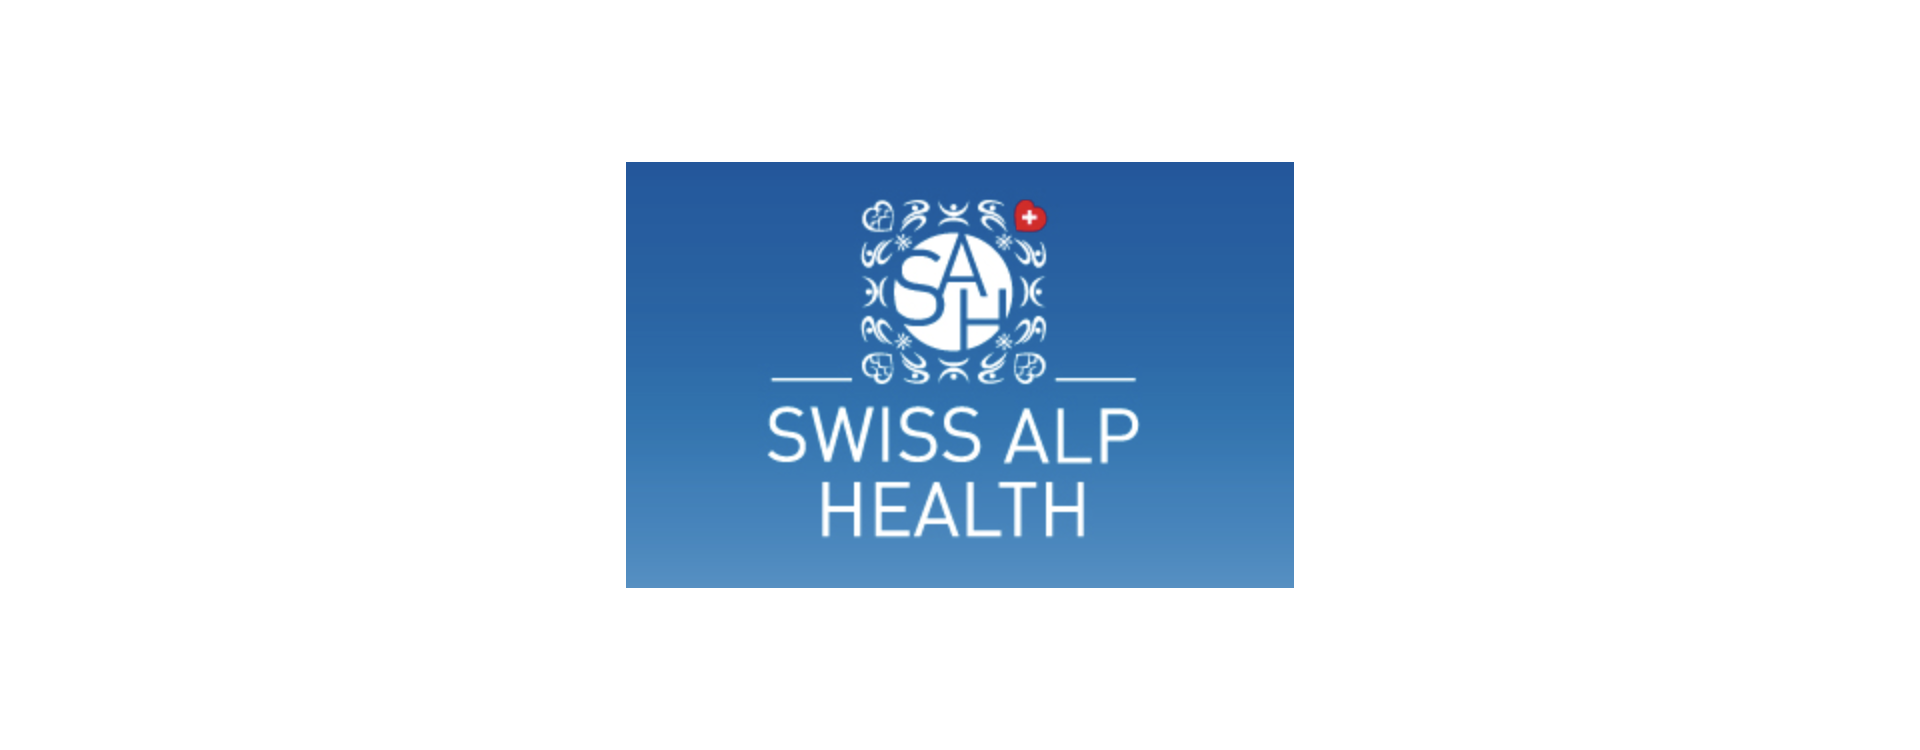 Swiss Alp Health: Erzeugnisse für das körperliche Wohlbefinden | Kanela